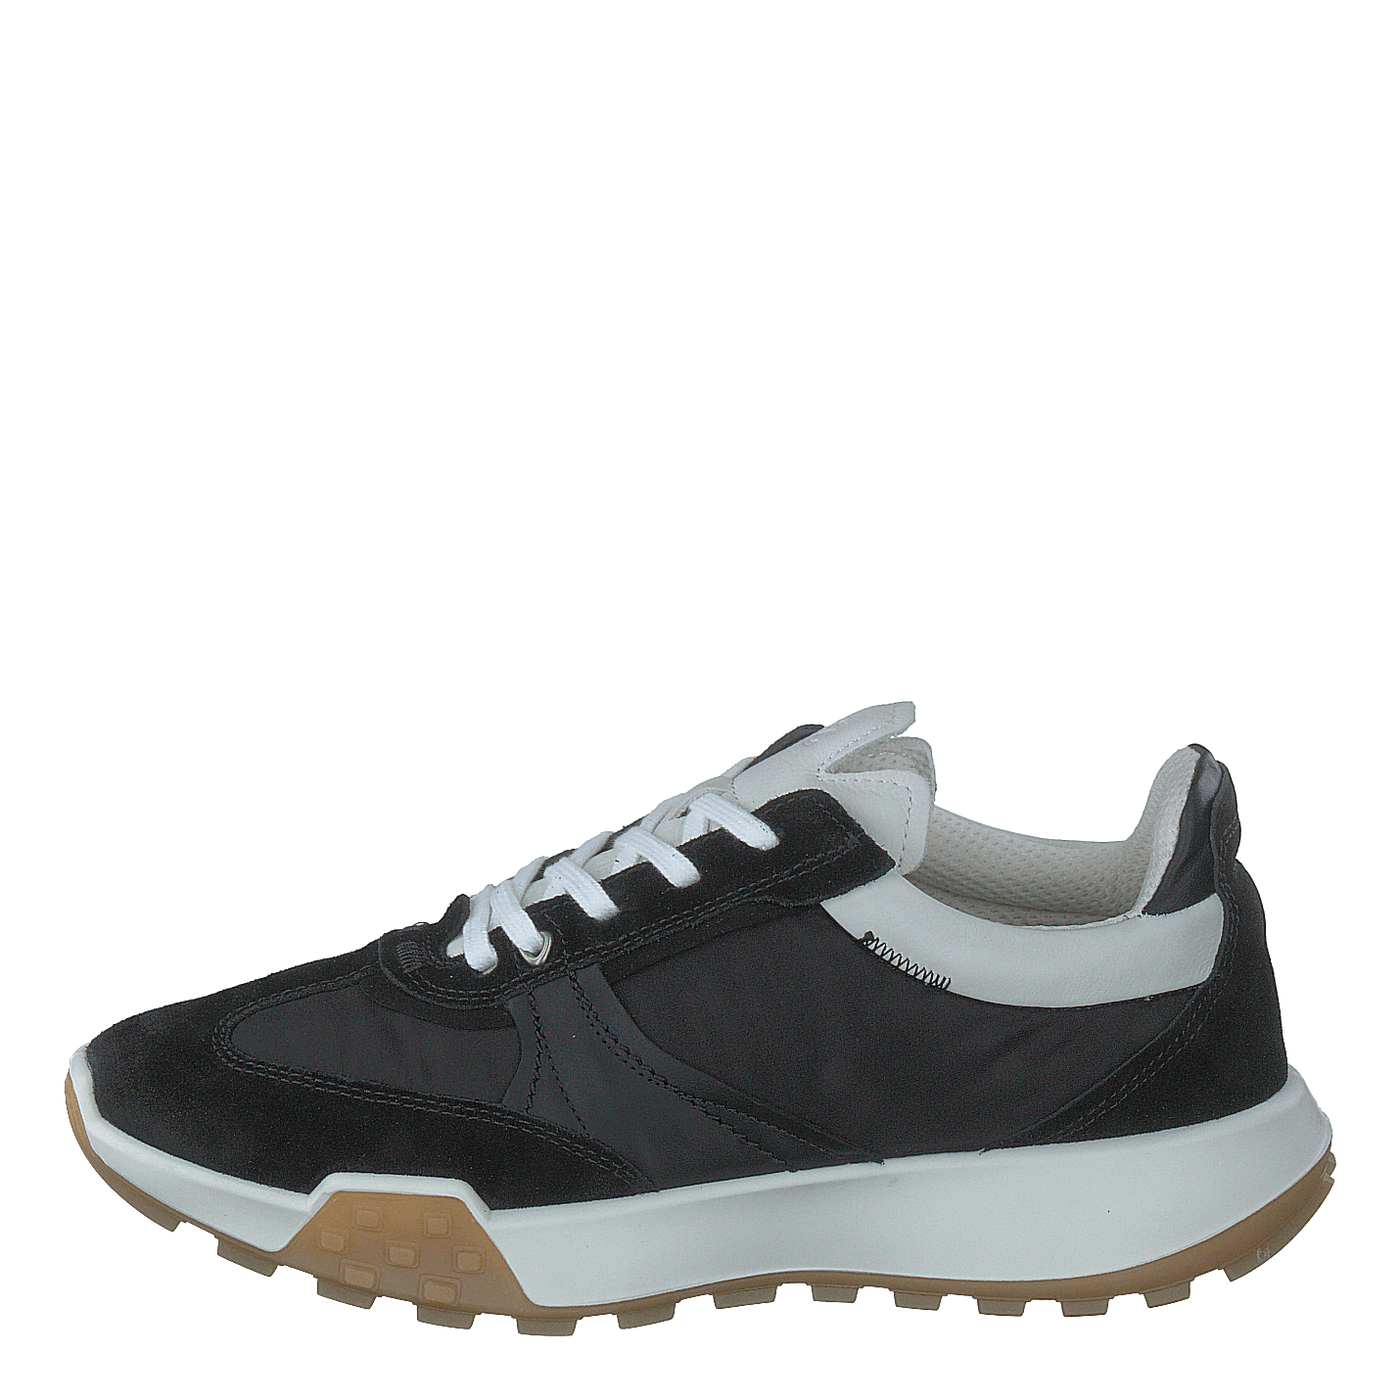 Ecco Retro Sneaker W Black/black/black/white